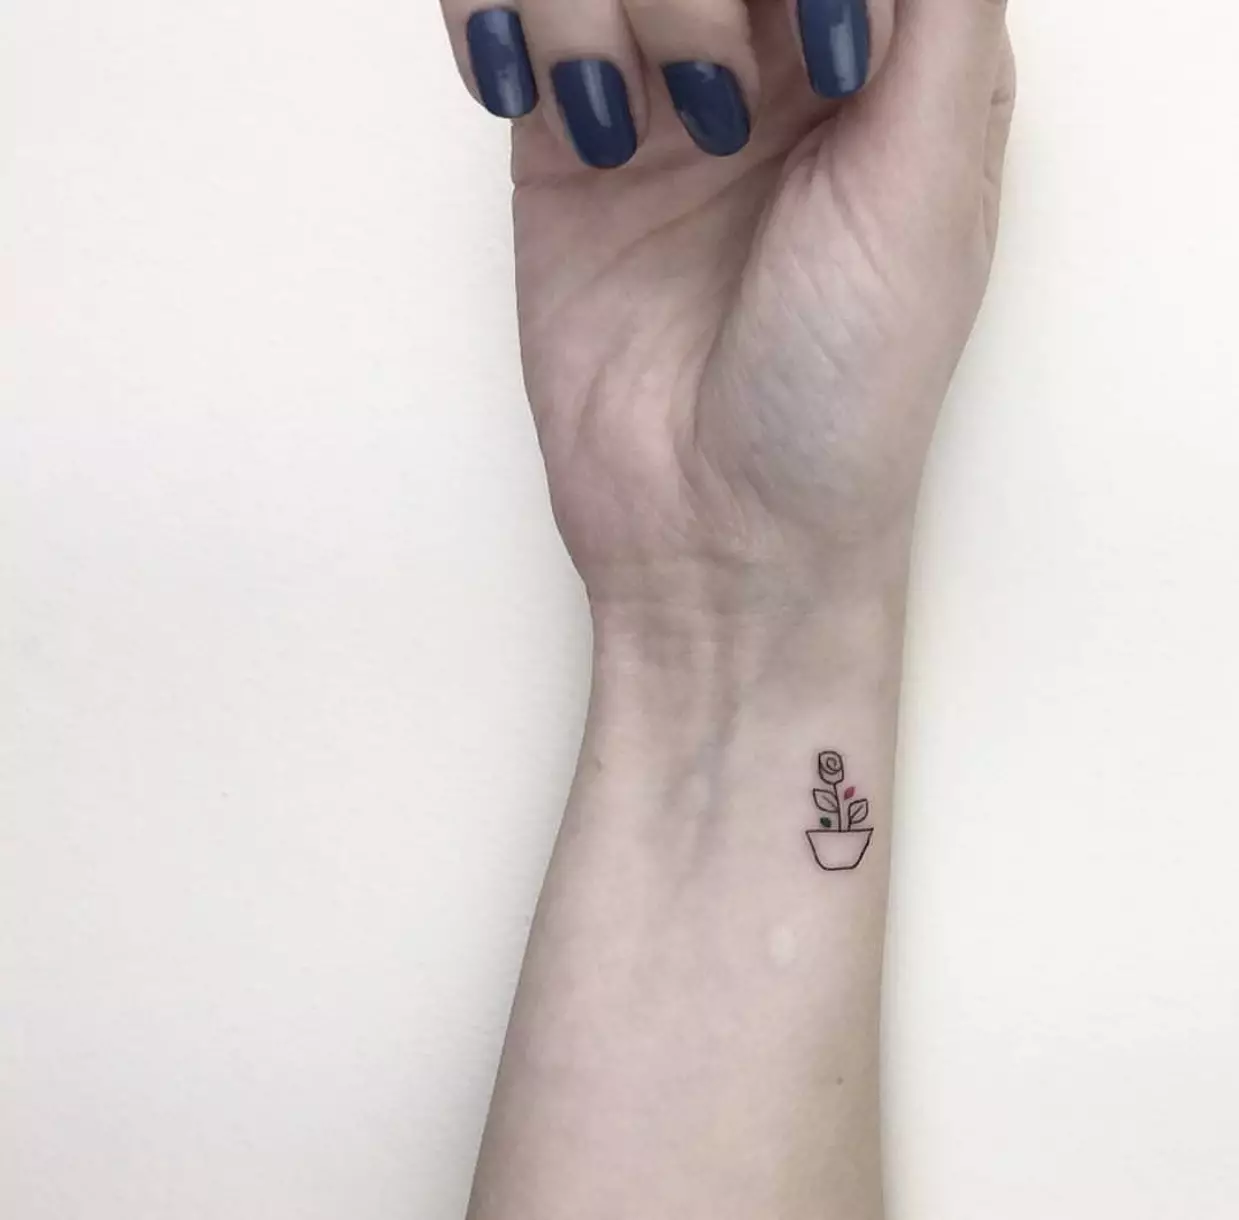 Tattoo for jenter på håndleddet (80 bilder): liten tatovering med mening og andre, skisser og betydninger, vakre tatoveringer rundt håndleddet og siden 13834_49